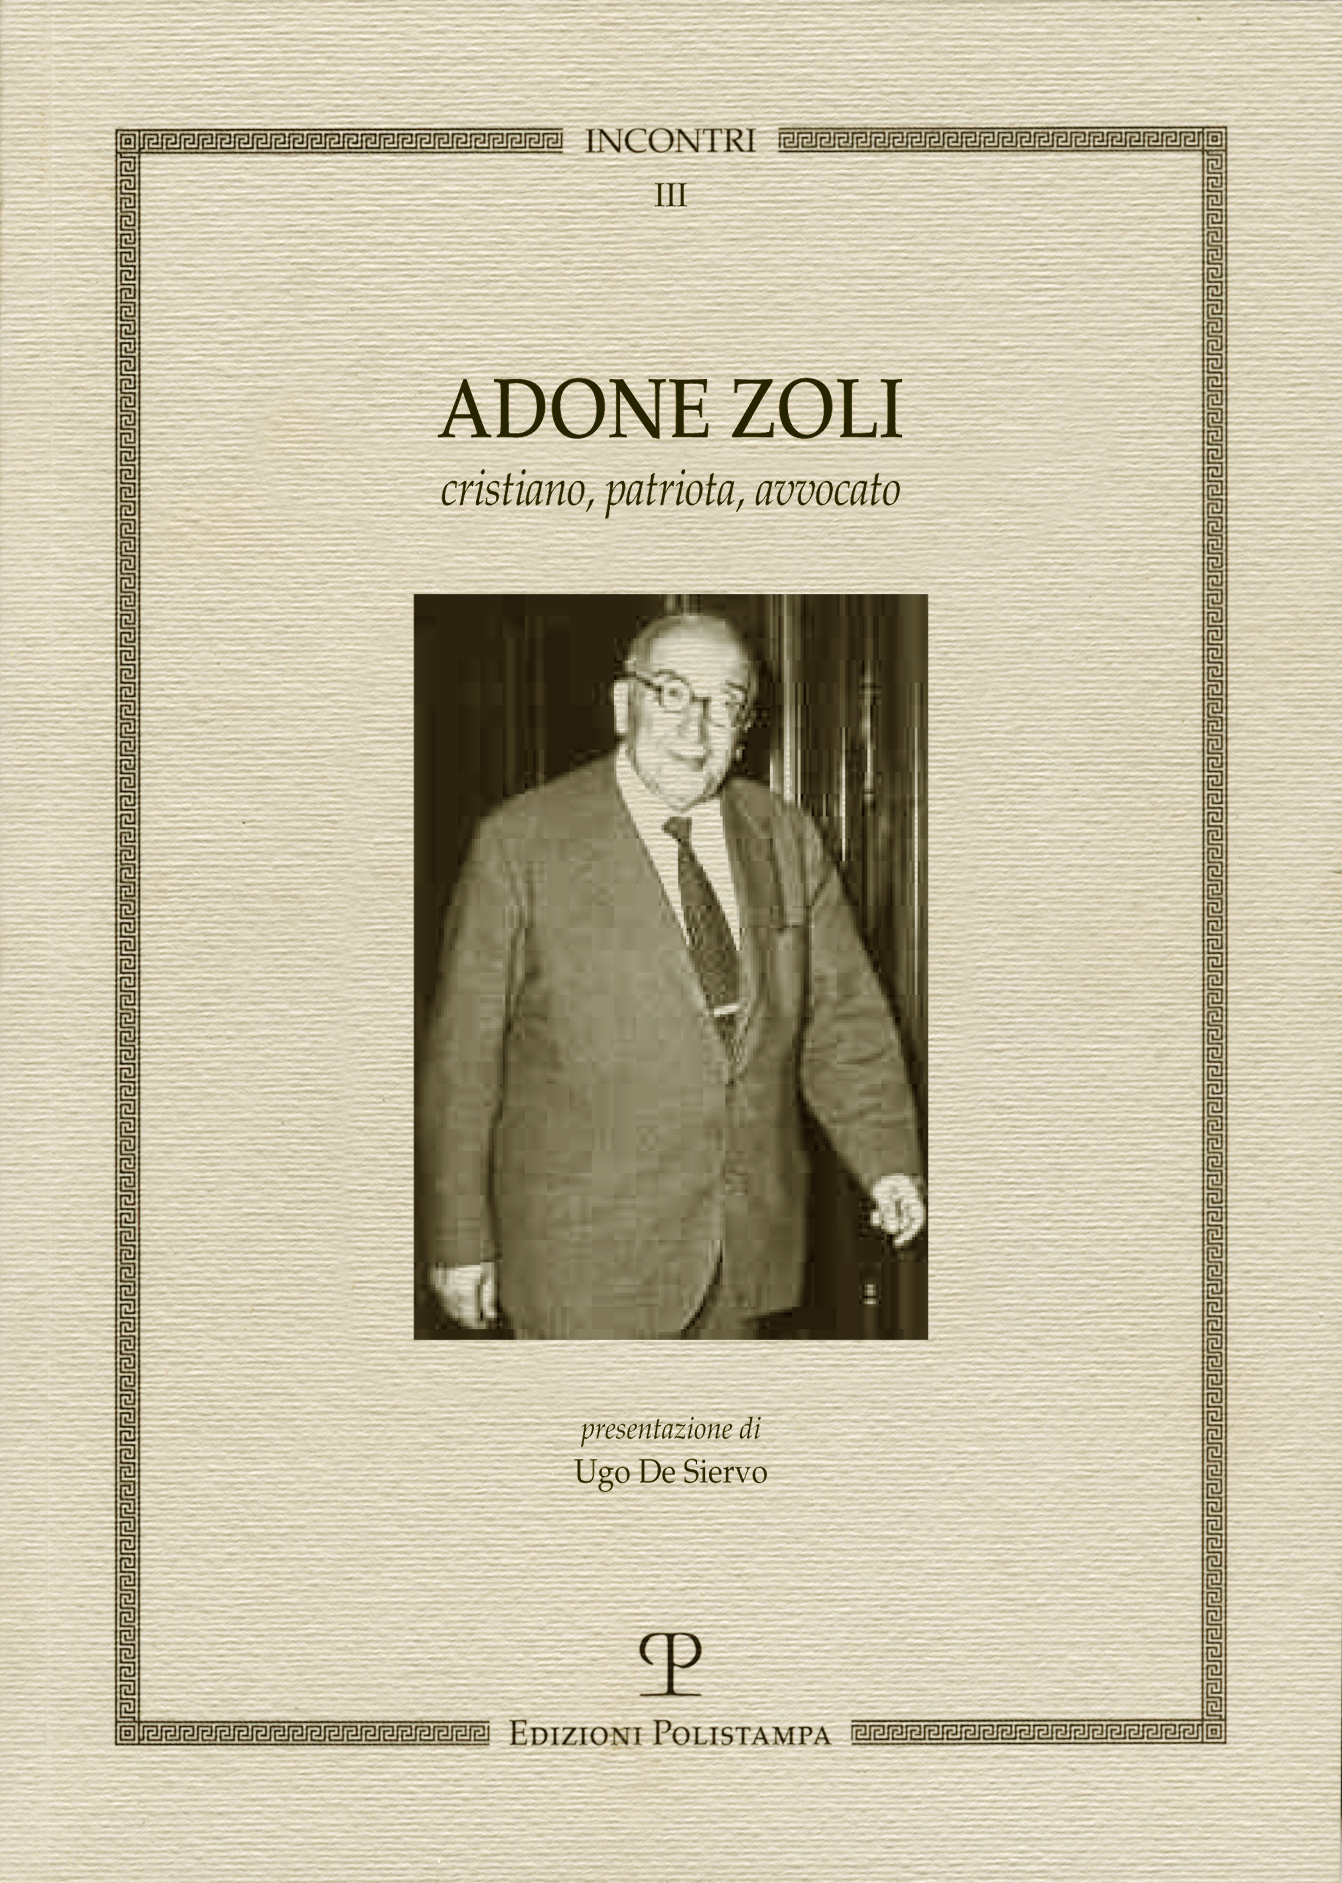 E-book, Adone Zoli : cristiano, avvocato, patriota, Polistampa